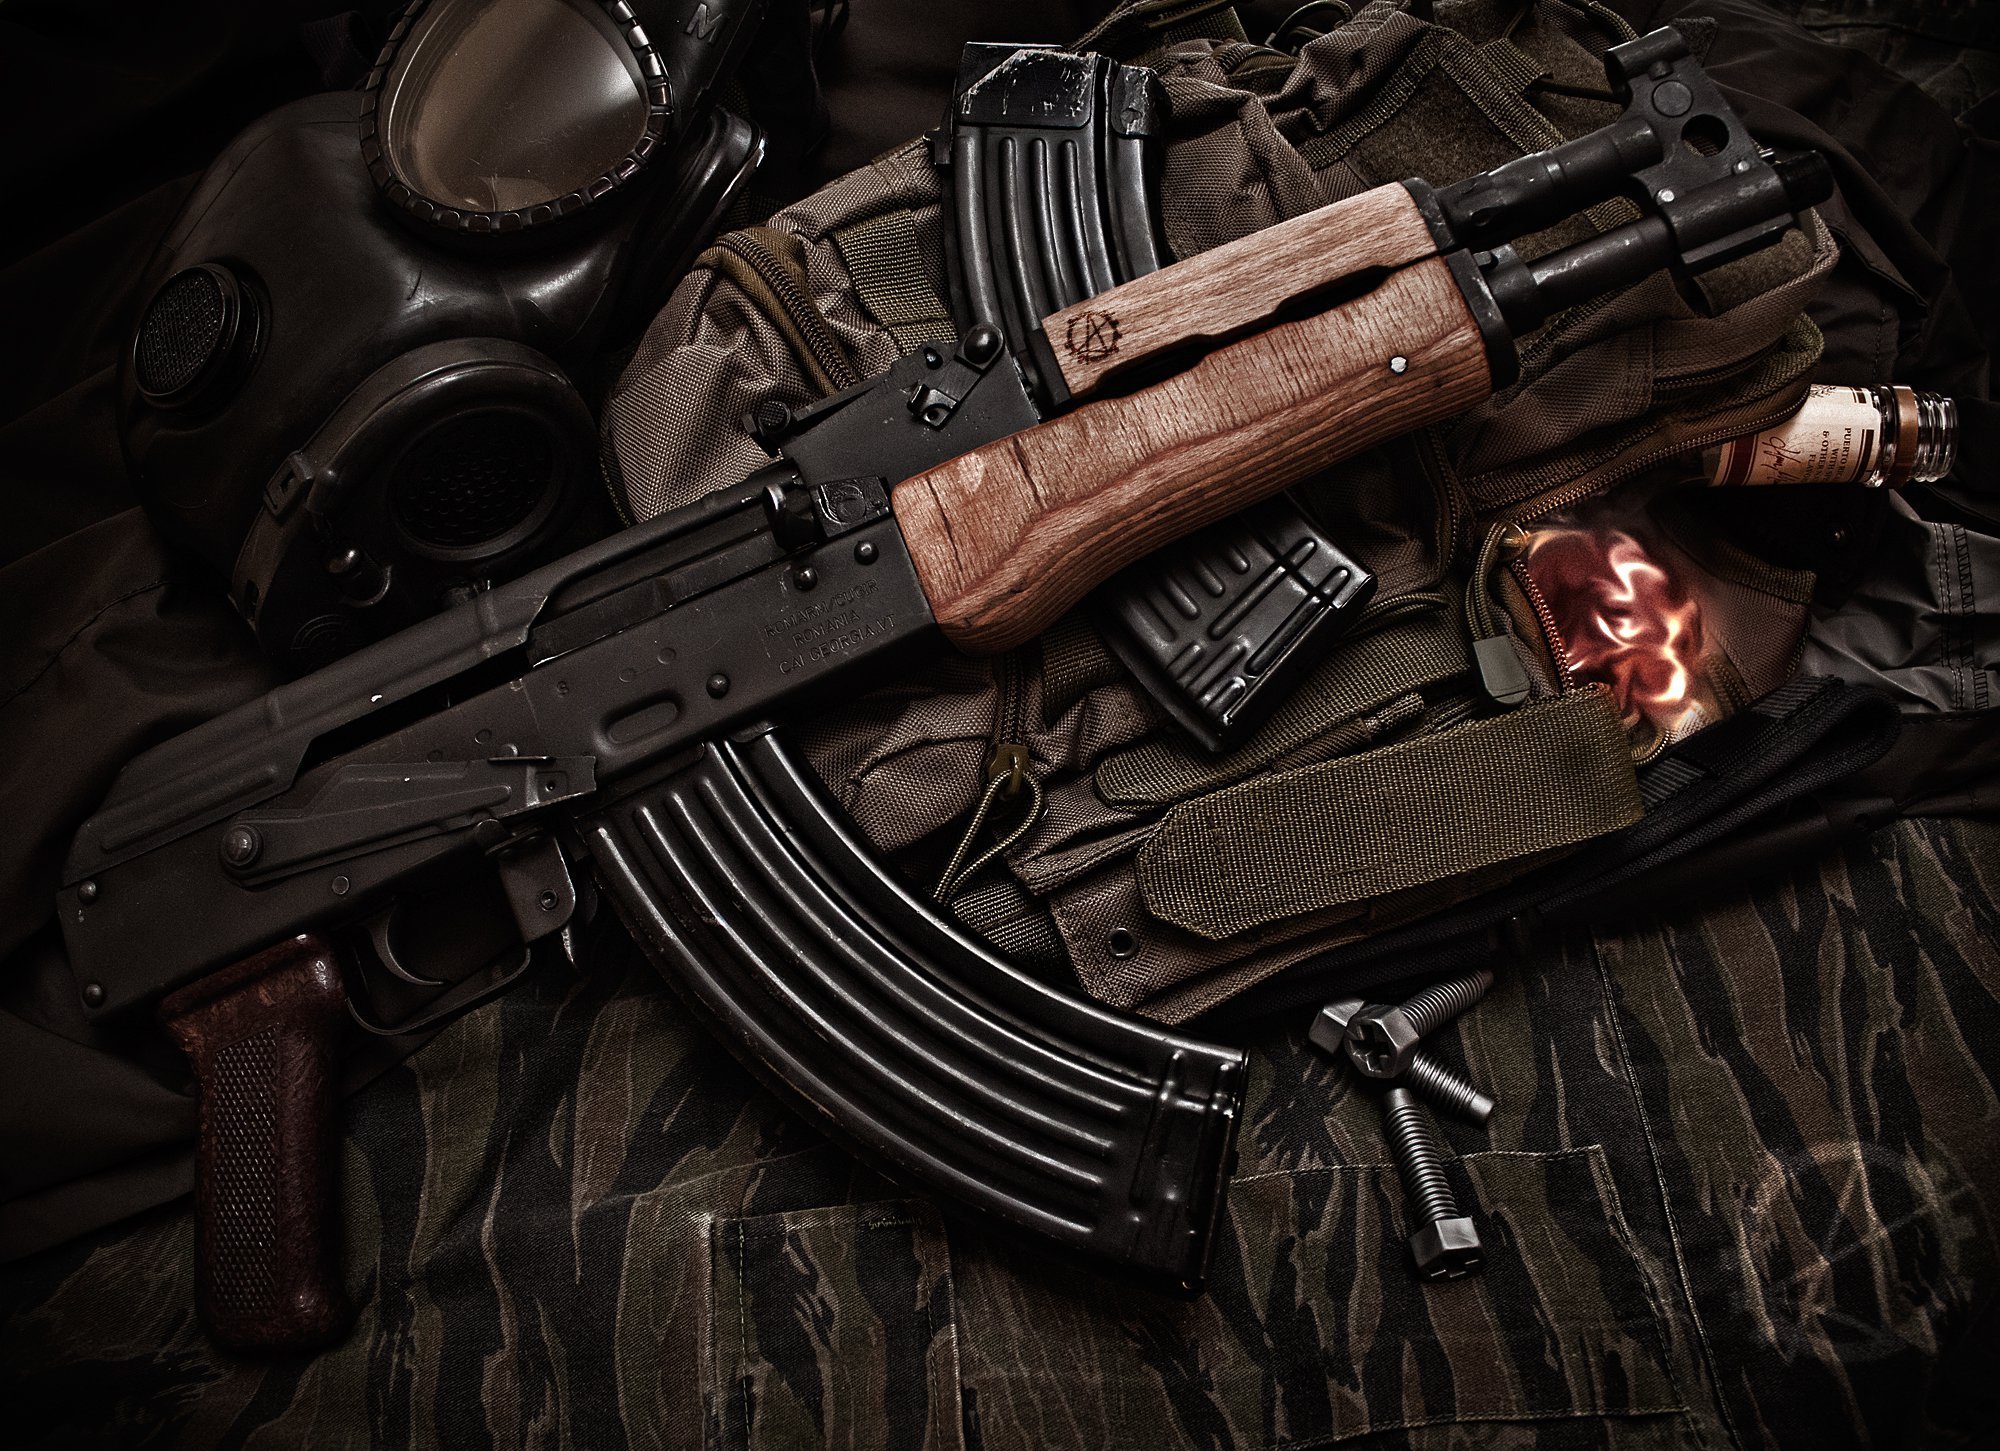 Akm Assault Rifle HD Wallpaper Background Image Id